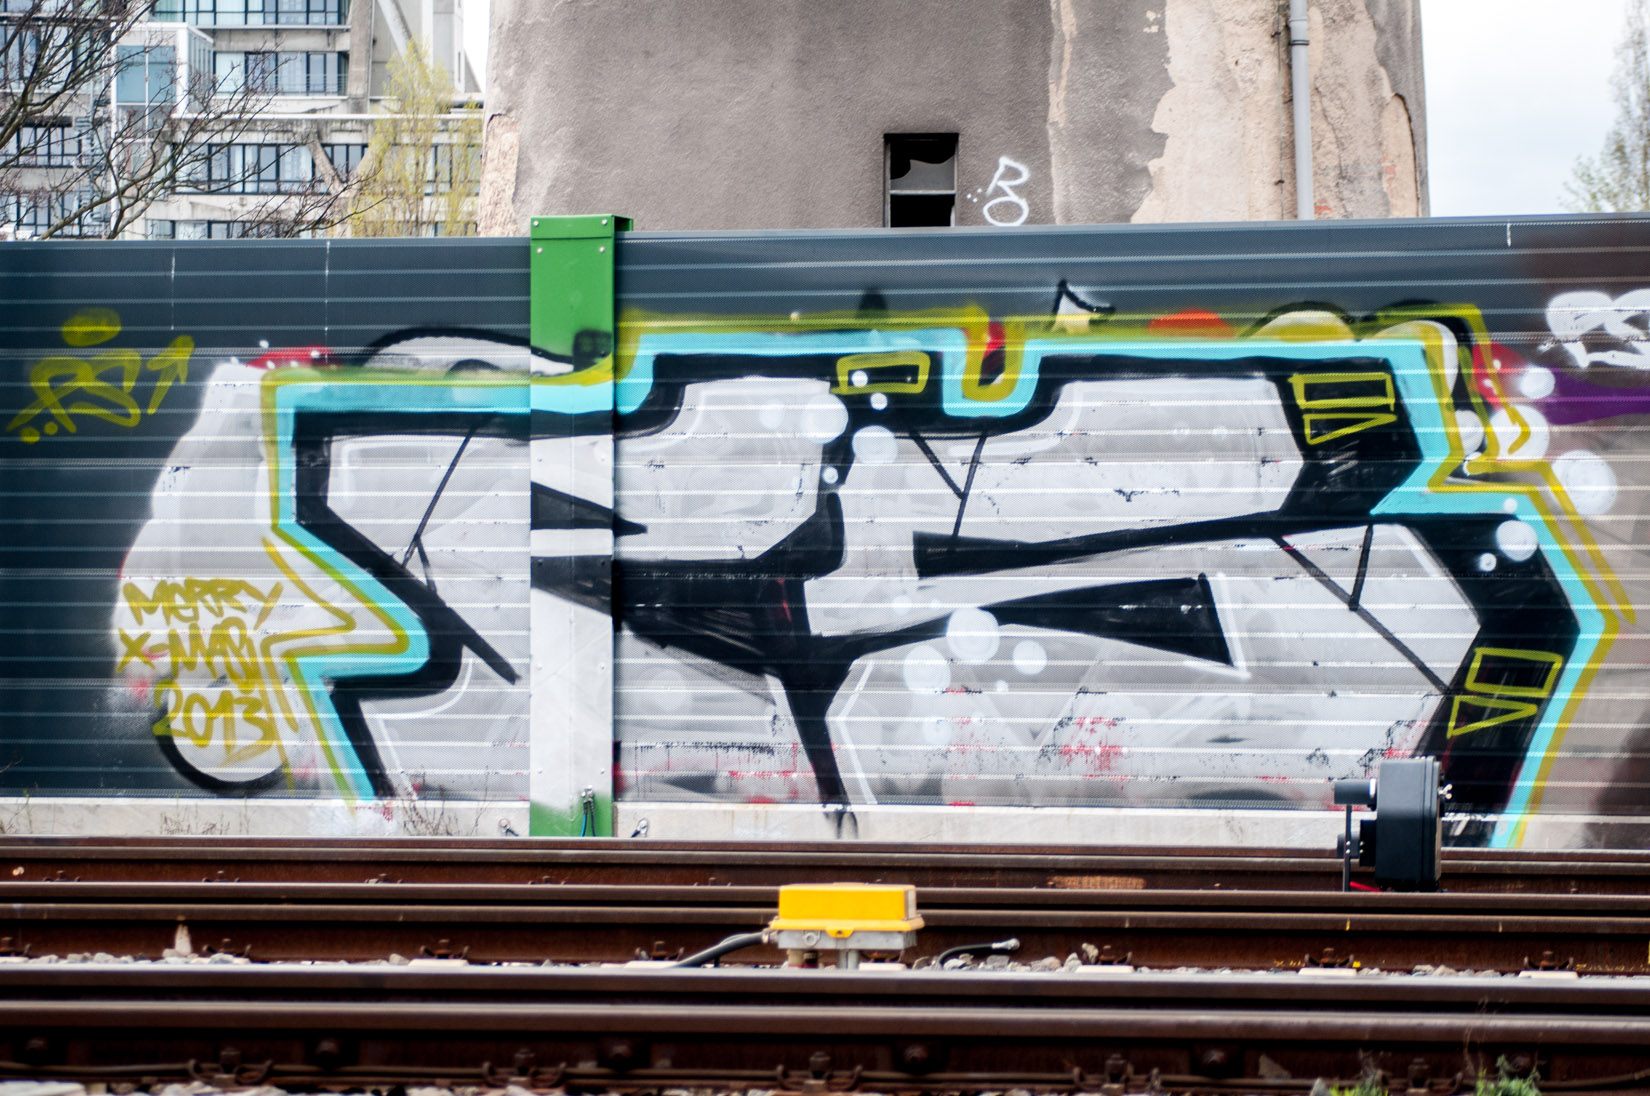 Frankfurt_Graffiti_Gallus Warte_2014-03 (18 von 45)